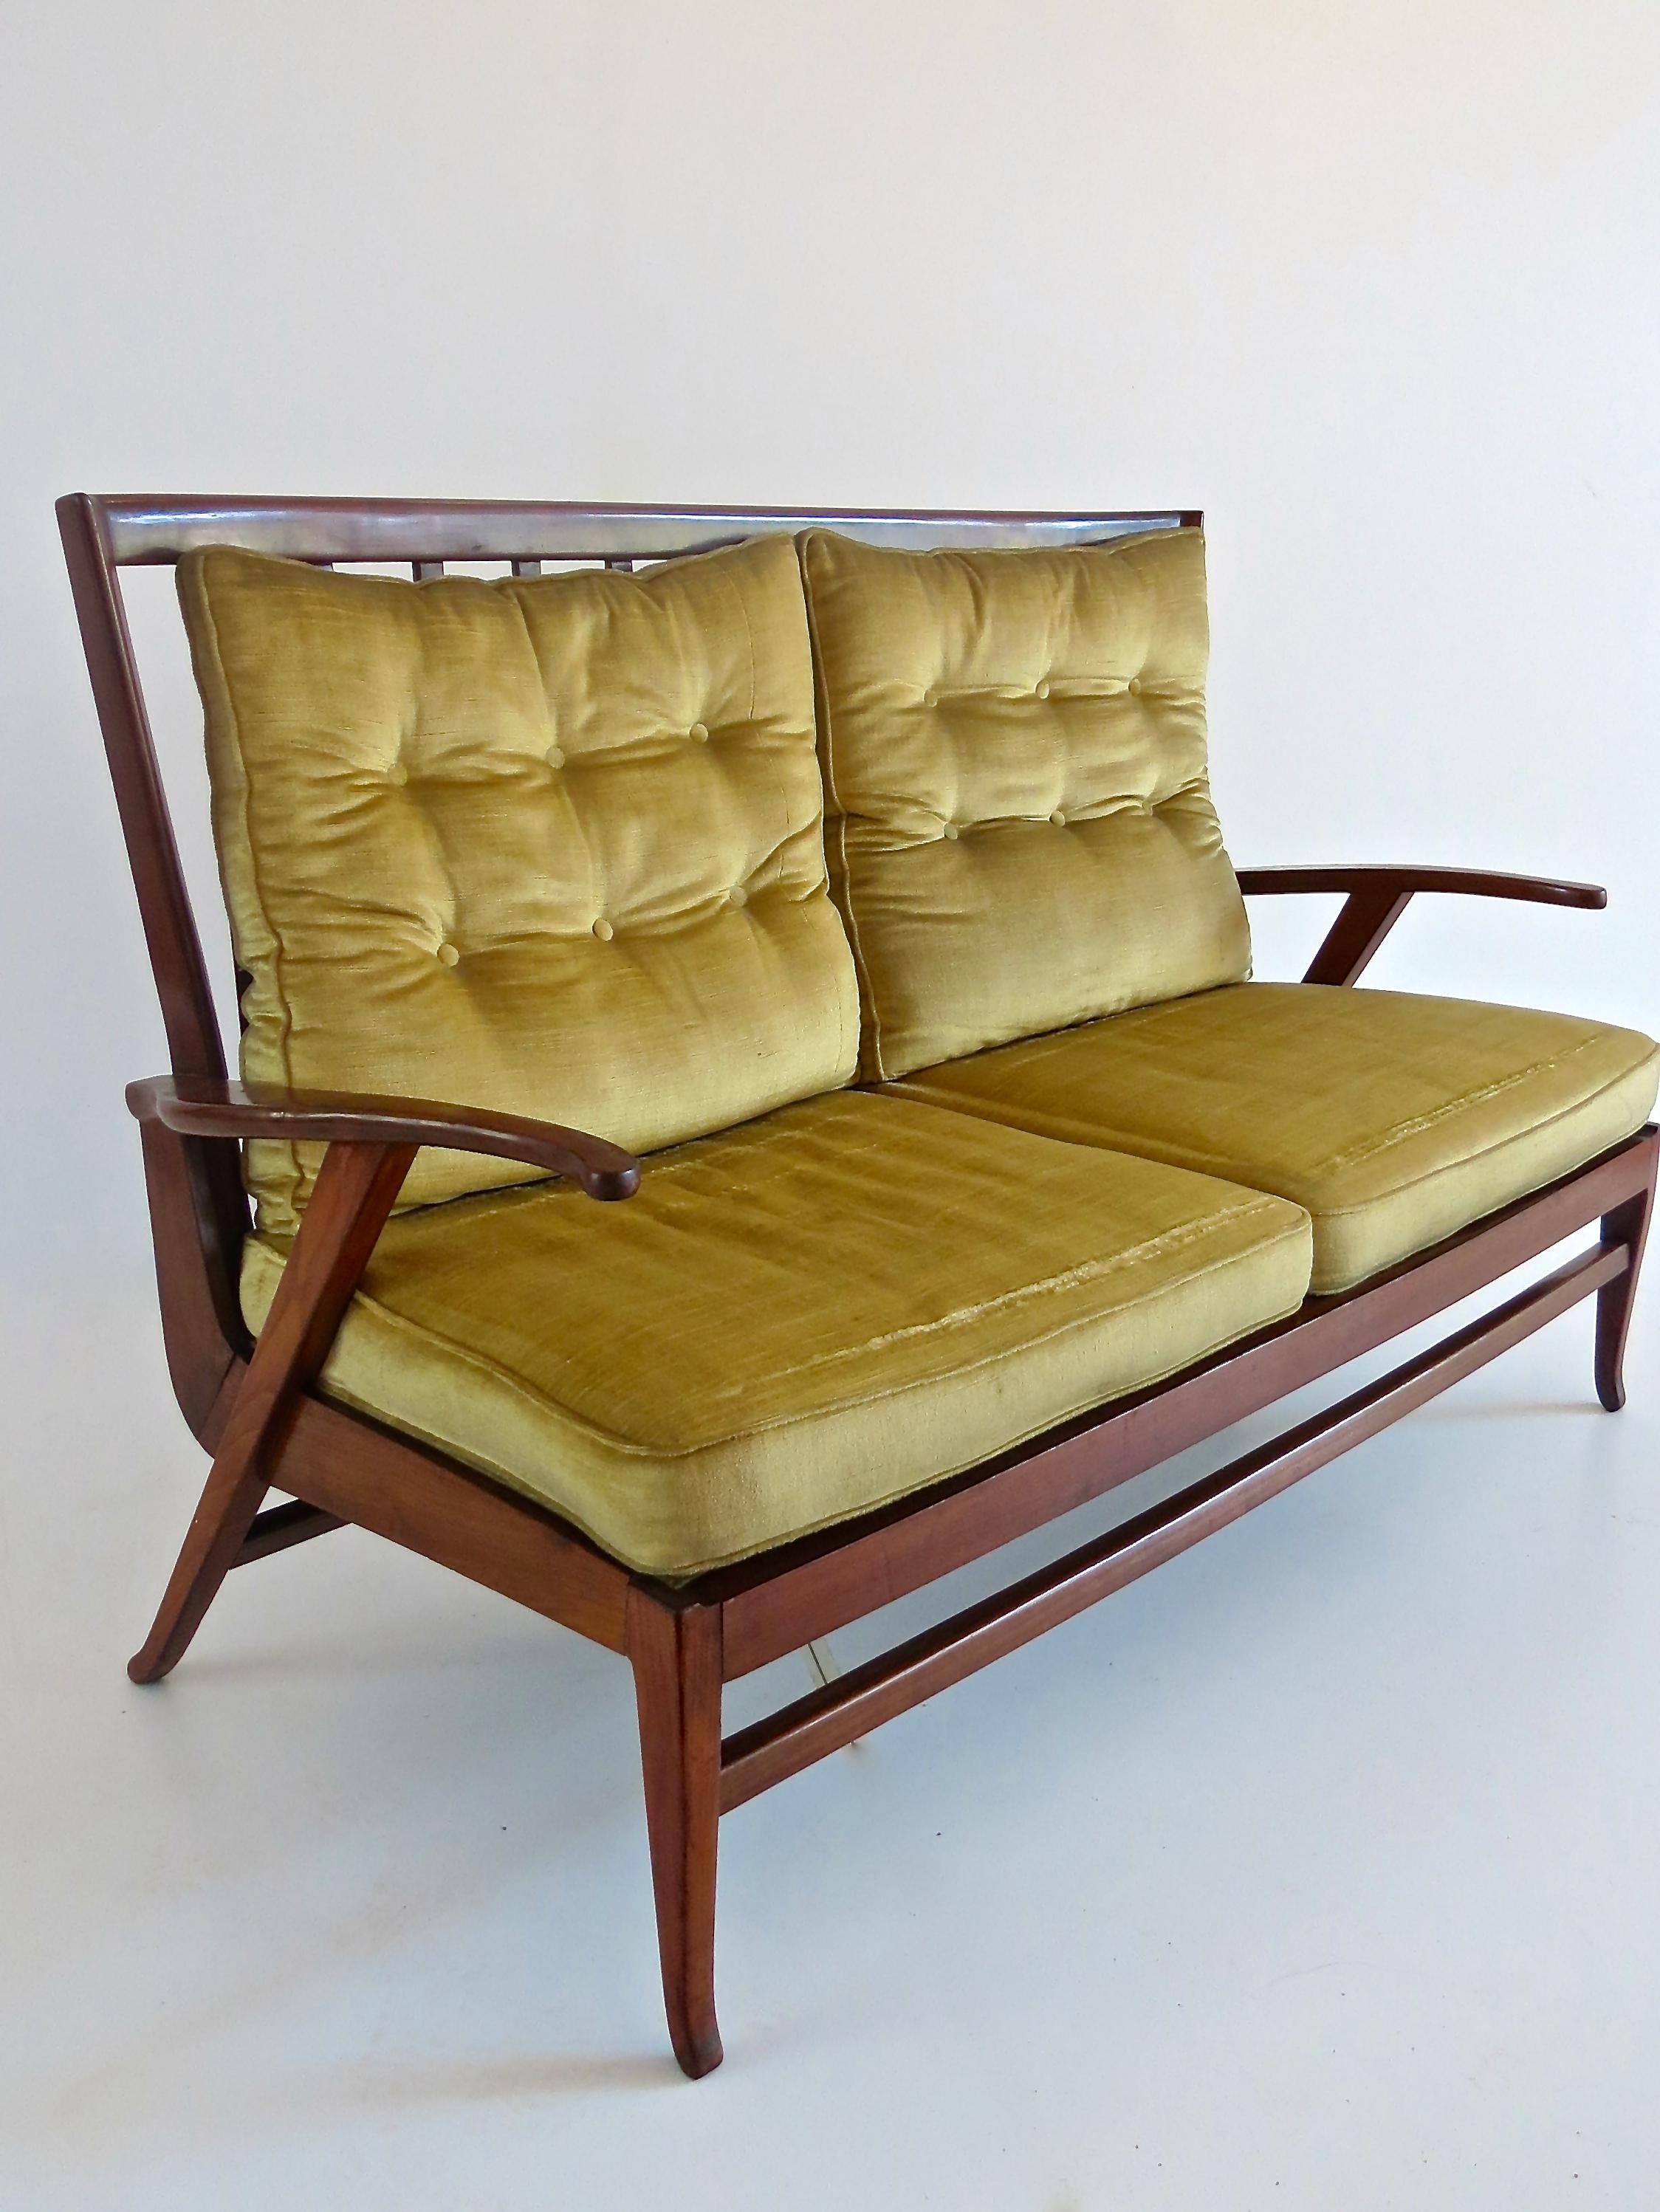 Rare canapé incurvé attribué à Paolo Buffa, vers 1950
noyer, velours doré original, fer
très bon état d'origine
Mesures : 145.5 x 60 cm hauteur 94 cm hauteur siège. 41 cm.